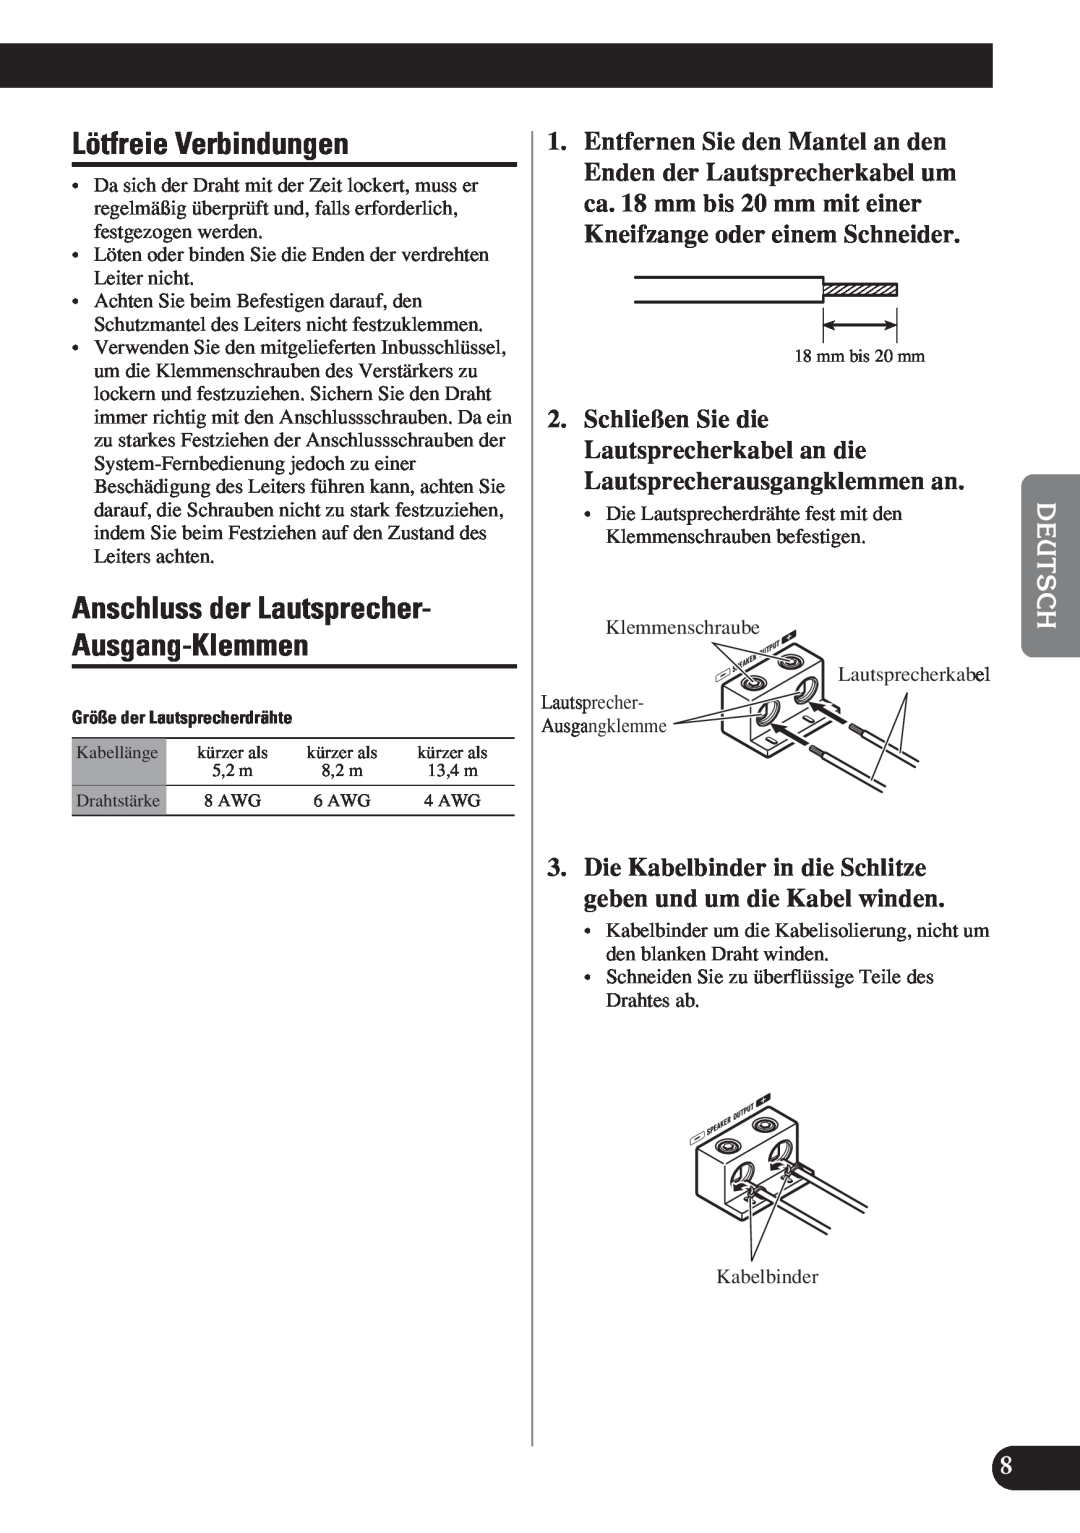 Pioneer D1200SPL owner manual Lötfreie Verbindungen, Anschluss der Lautsprecher- Ausgang-Klemmen 